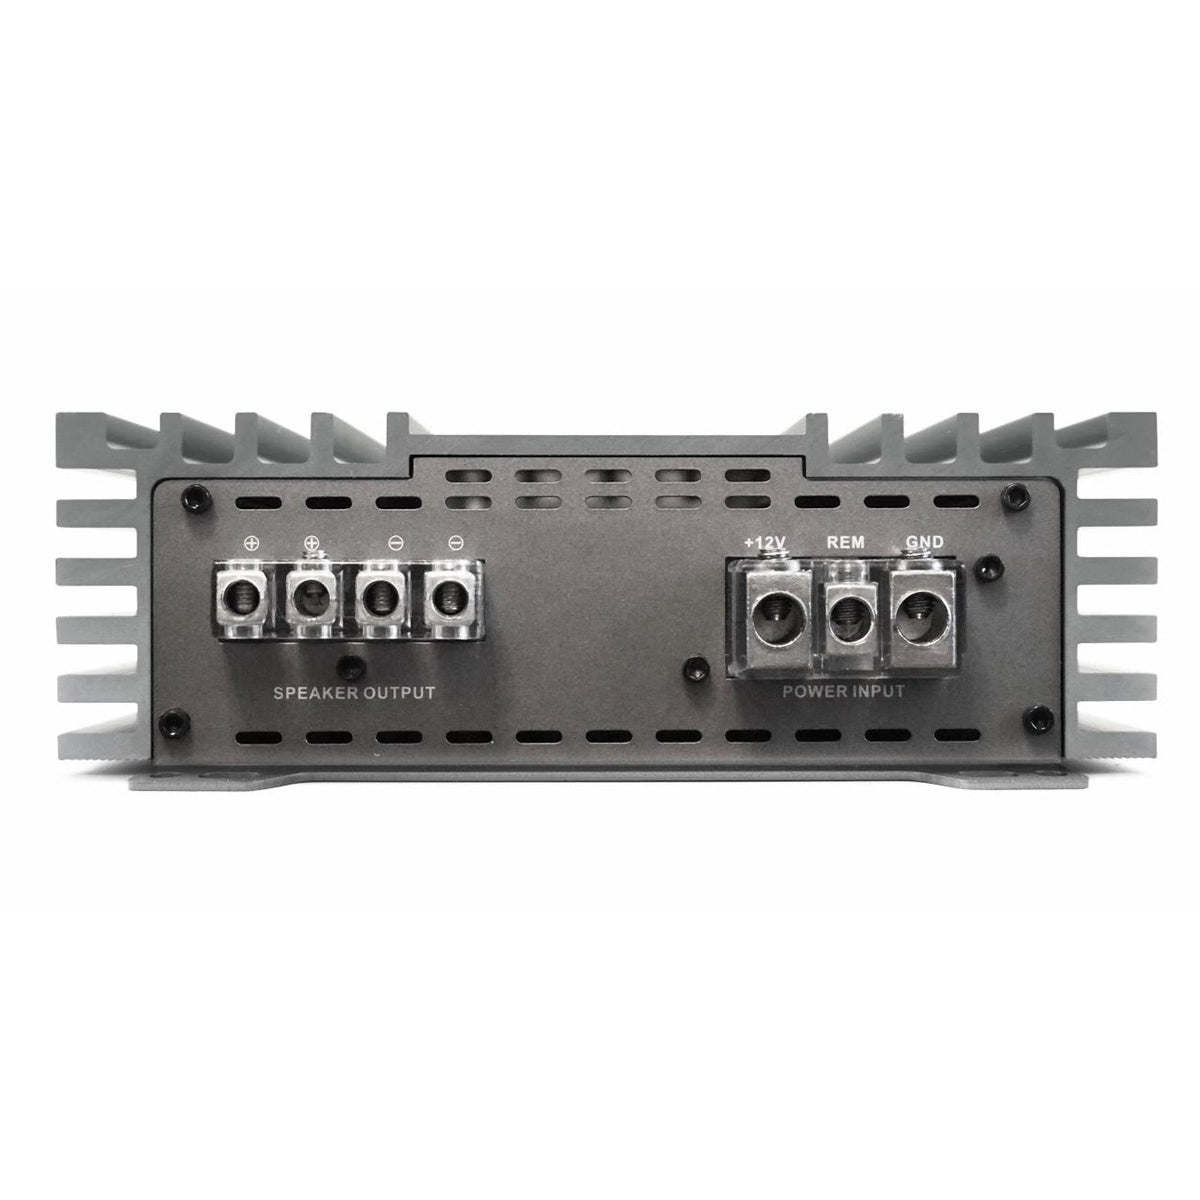 Zapco Z-1KD II Mono 1000-Watt Class D Bass Amplifier